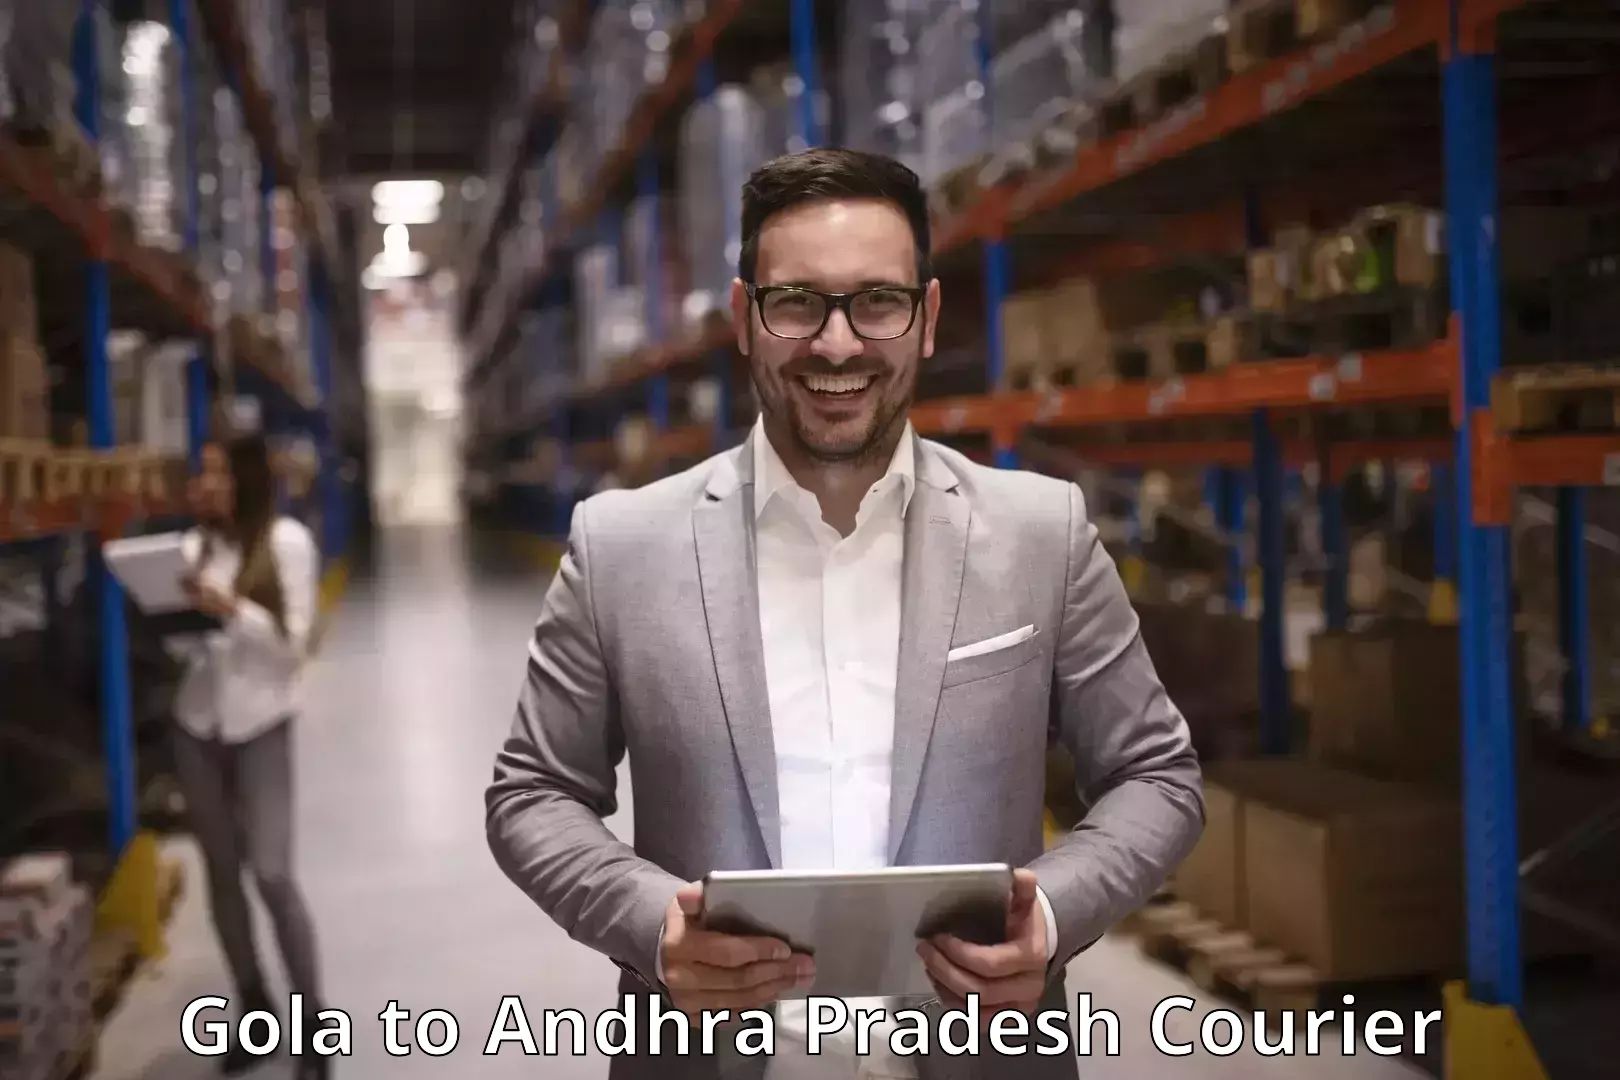 Quality courier services Gola to Andhra Pradesh